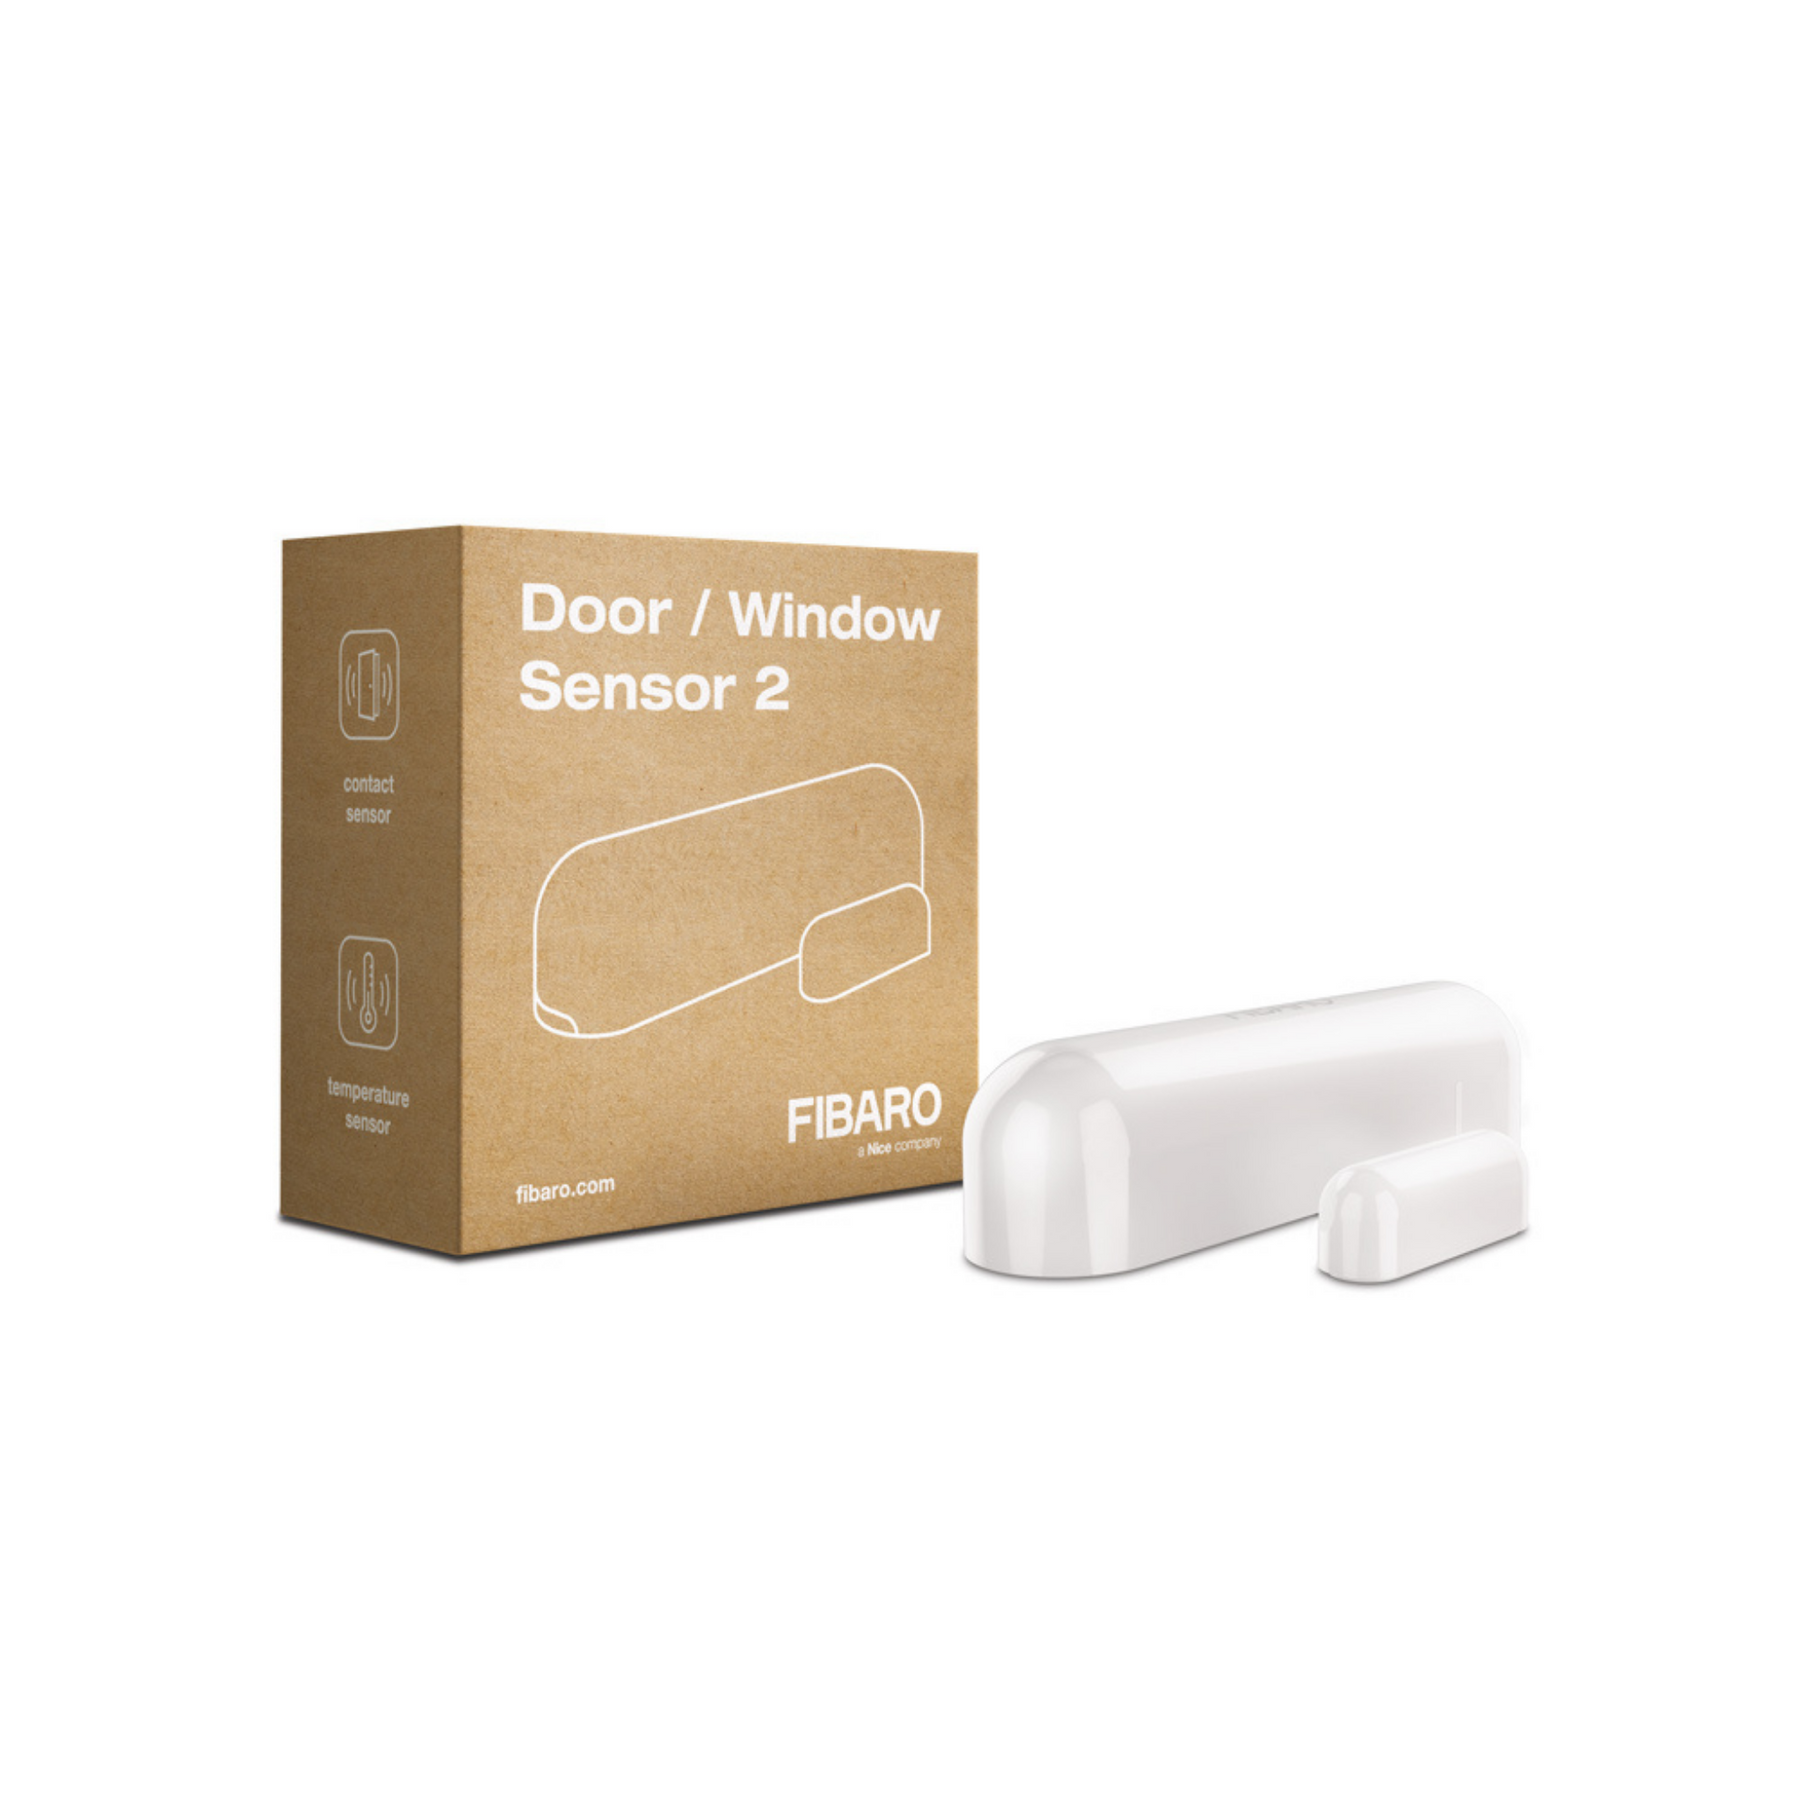 FIBARO Door / Window Sensor 2